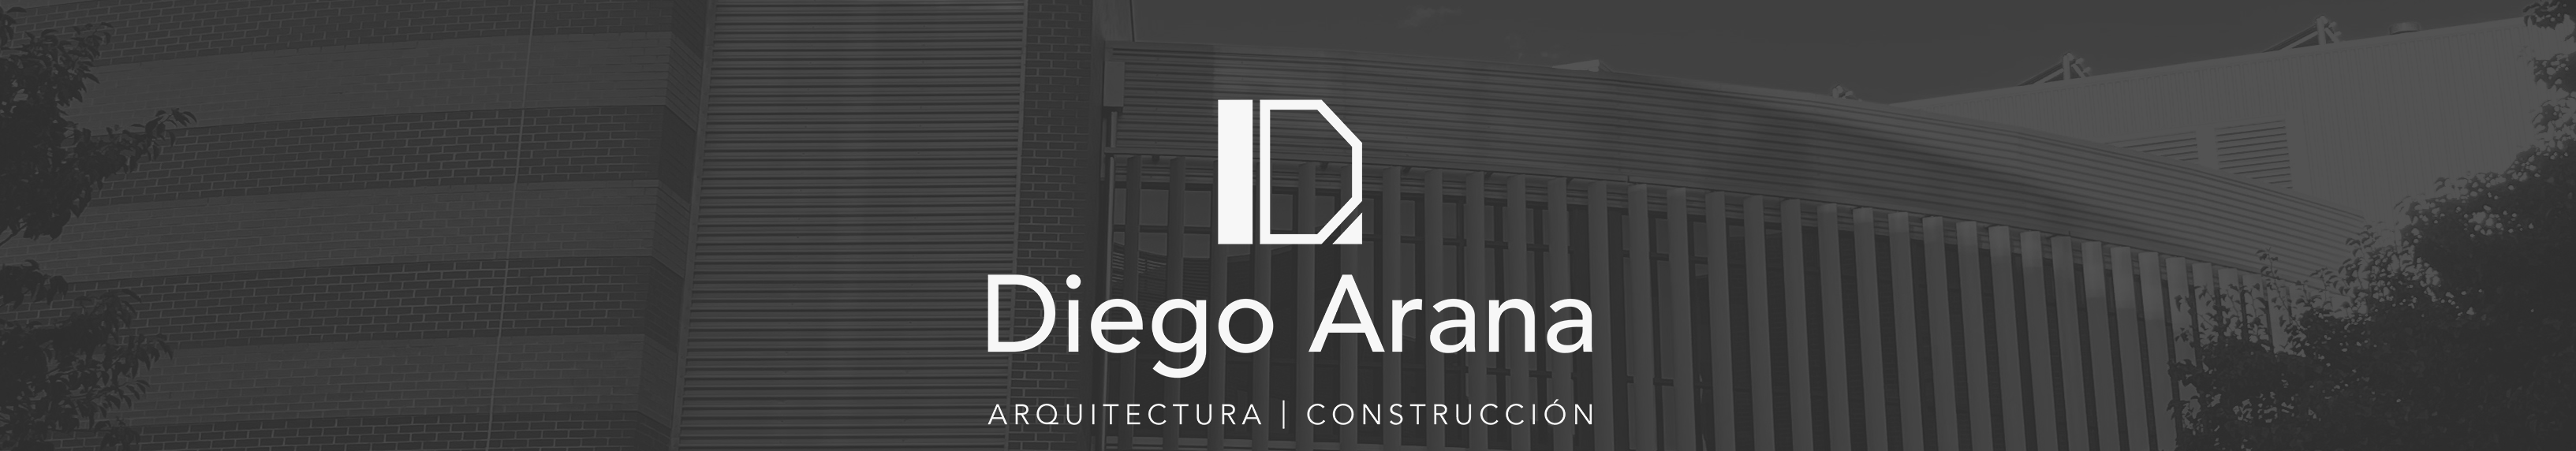 Banner de perfil de Diego Arana